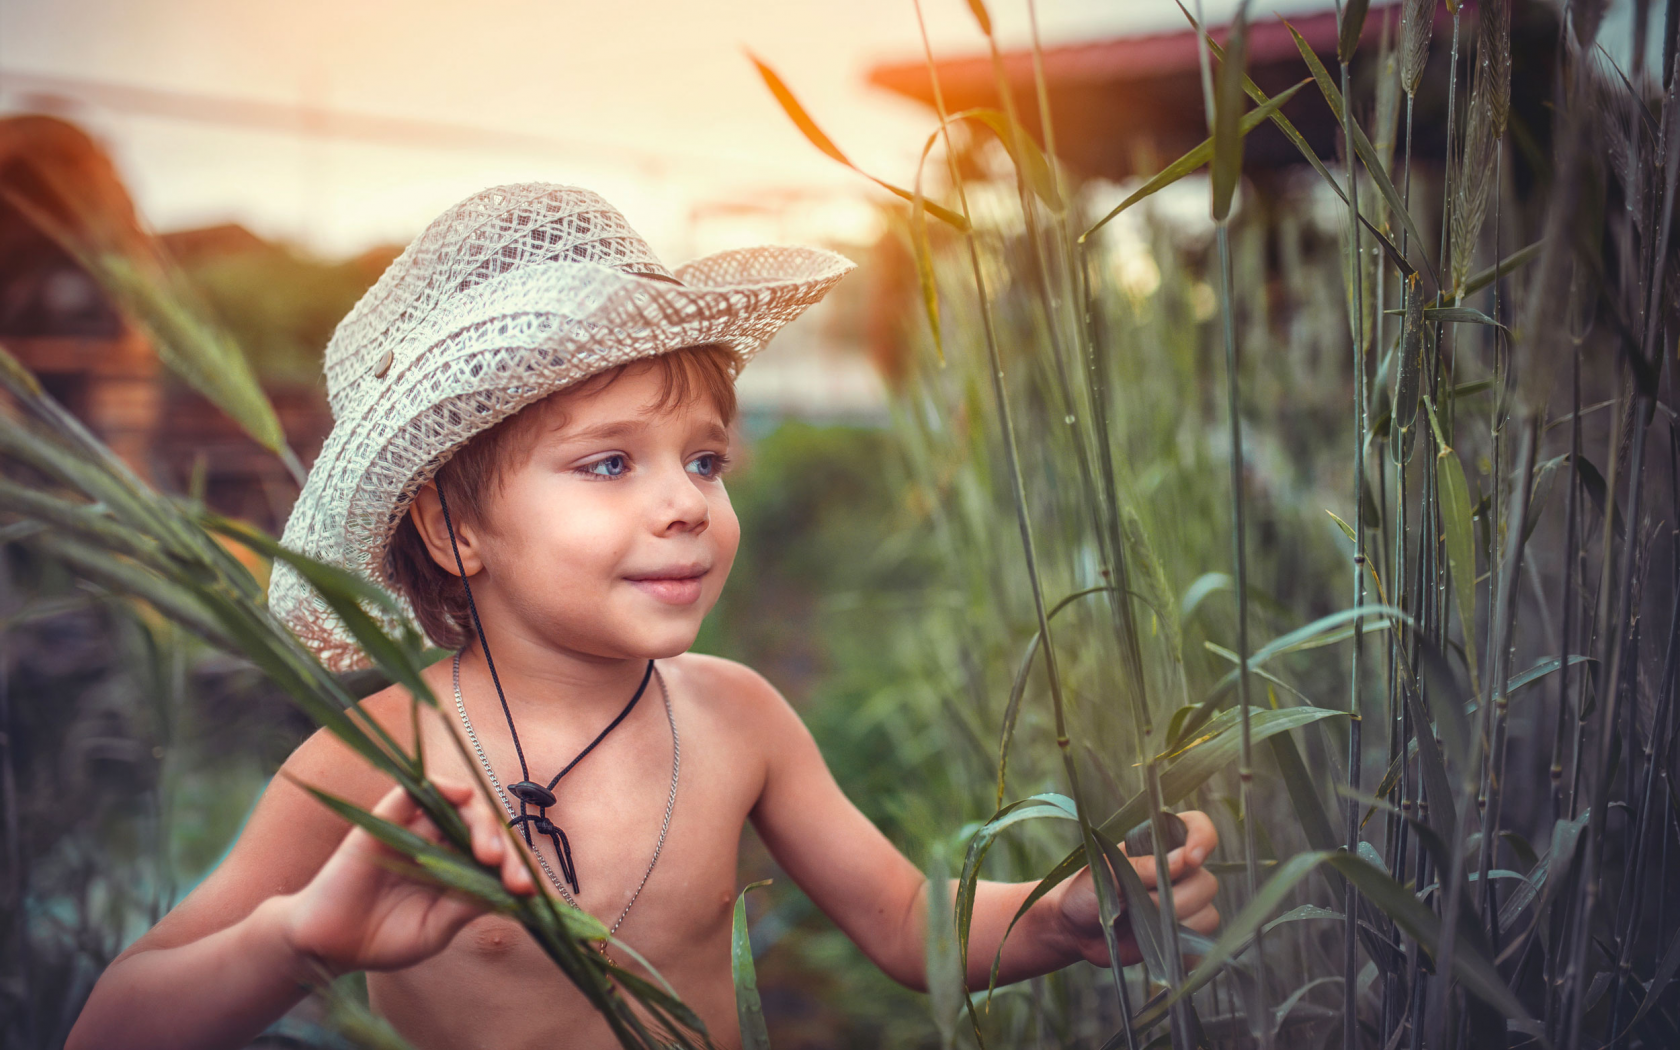 мальчик, шляпа, камыш, трава, любопытство